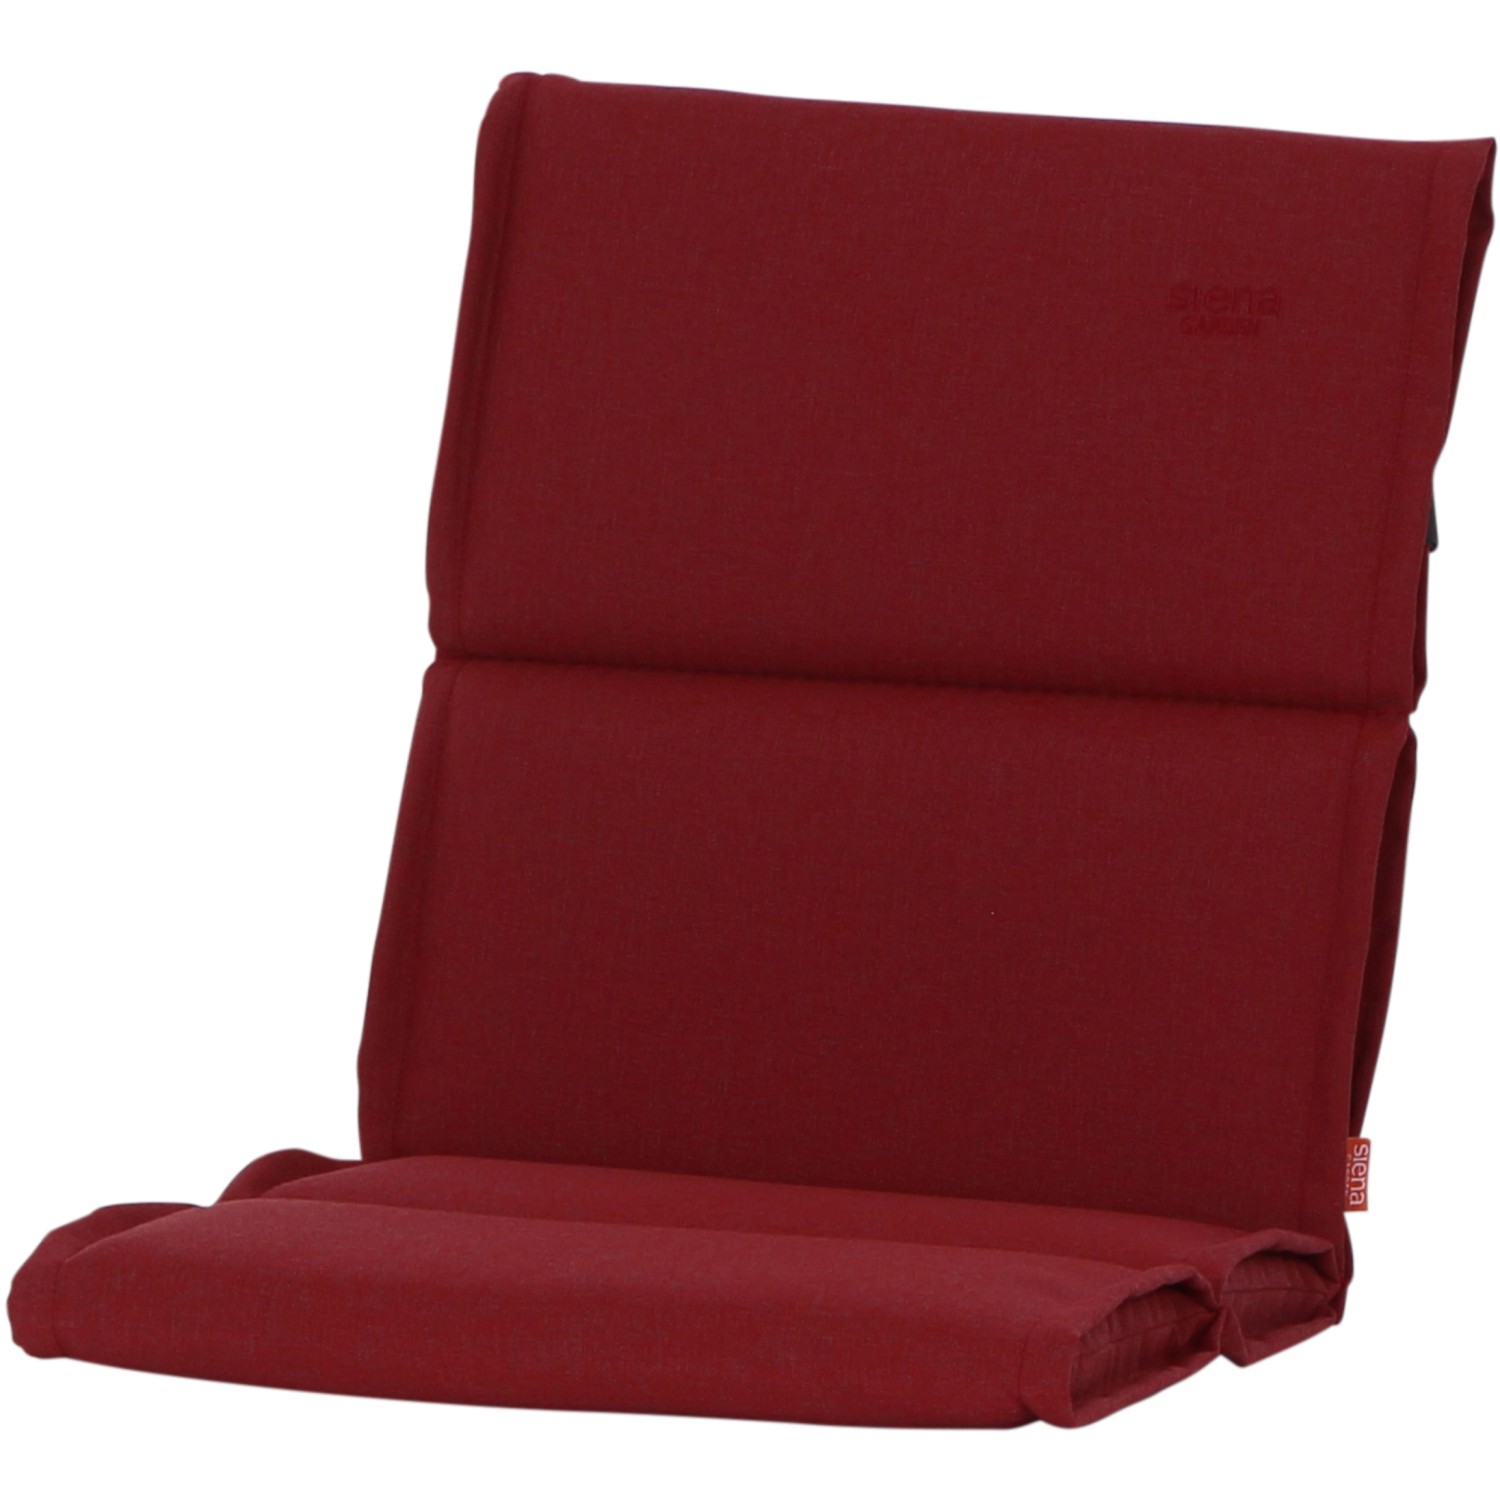 Siena Garden Sesselauflage Stella 96 cm x 46 cm x 3 cm Rot kaufen bei OBI